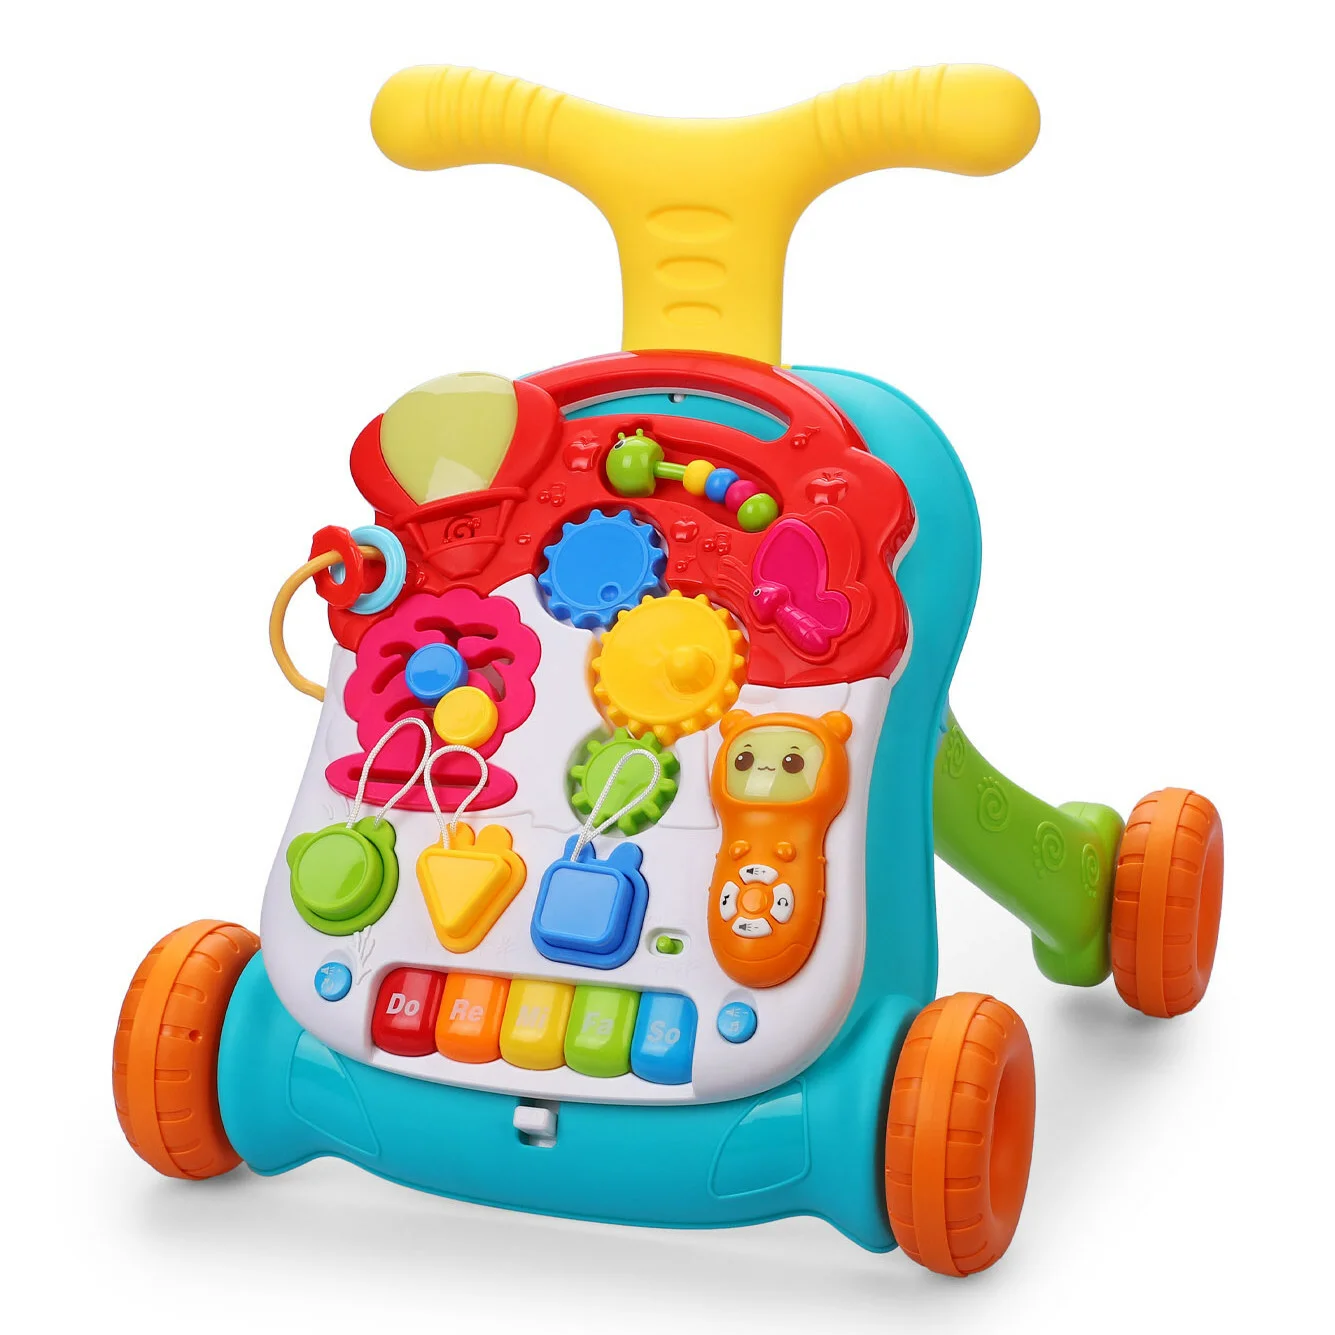 Игрушки для ребенка 1,5-2лет - игрушки для ребенка 1 5 года - запись пользователя юлиана (mrsklaus) в сообществе выбор товаров в категории игрушки - babyblog.ru